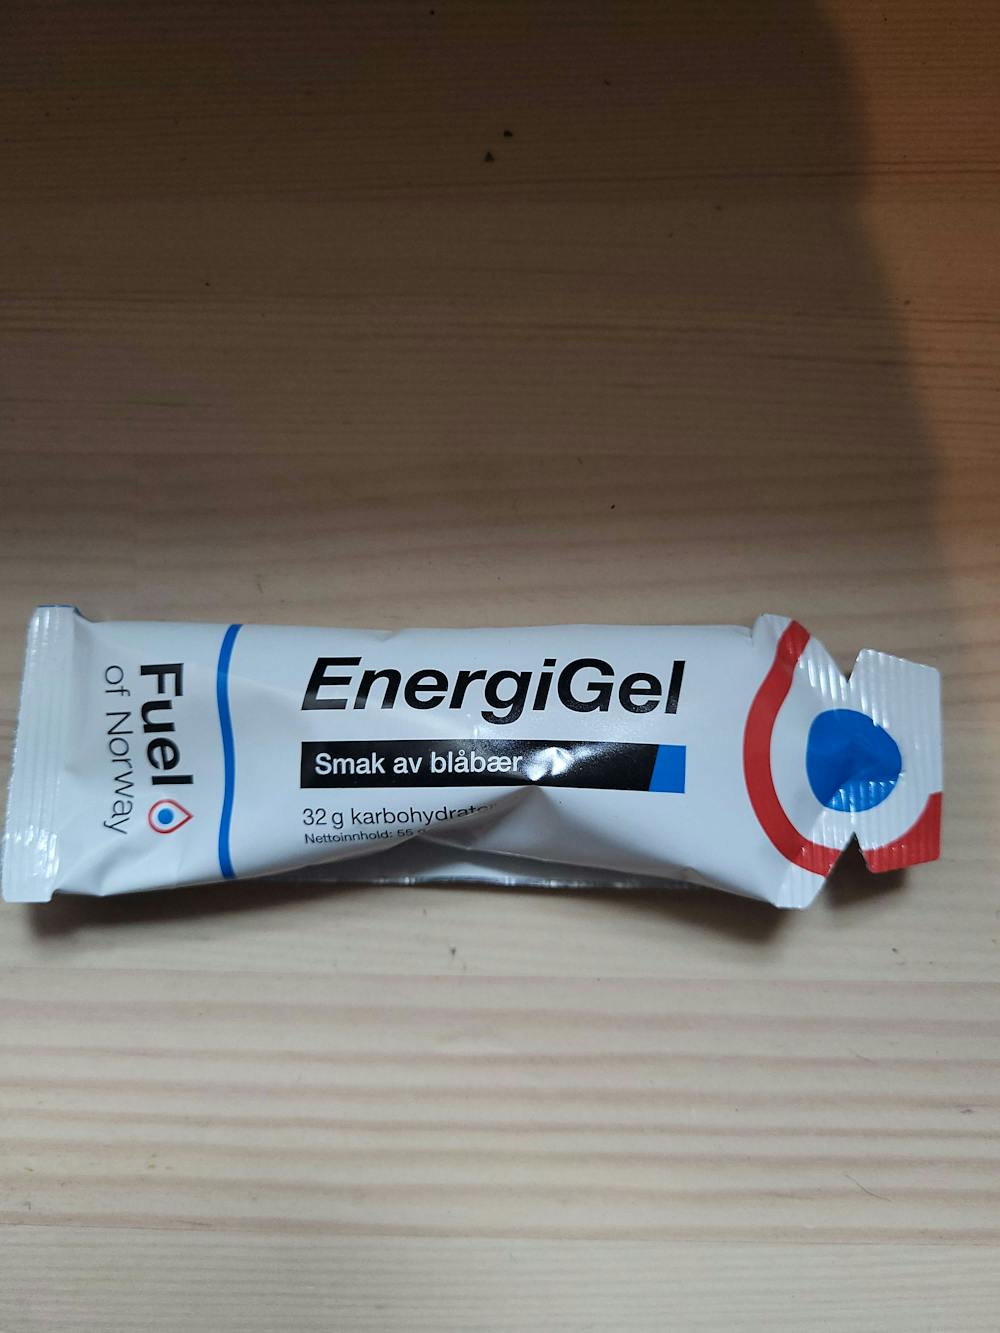 Energigel, Fuel of Norway 